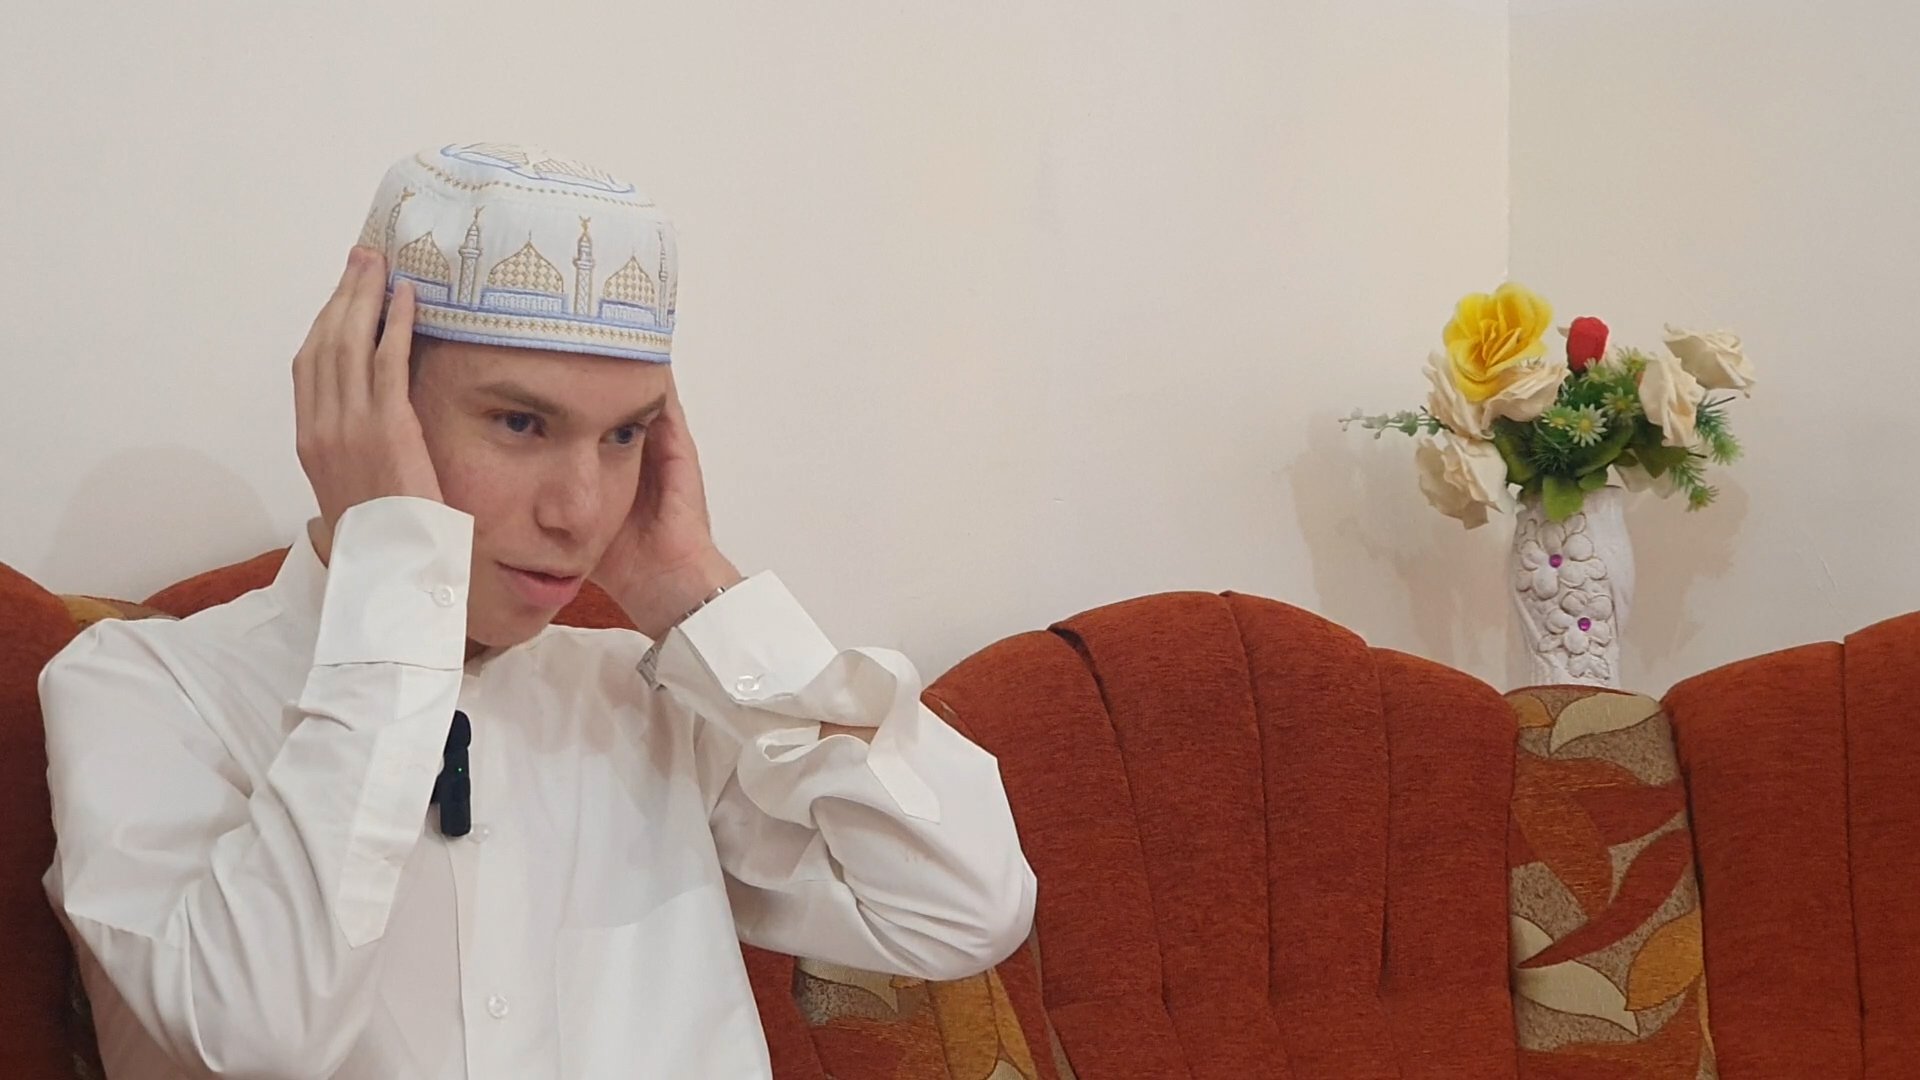 فتى تلعفر الكفيف يحفظ القرآن ويتقن لغتين ويلعب ببجي: أحلم بمدرسة مثل أربيل